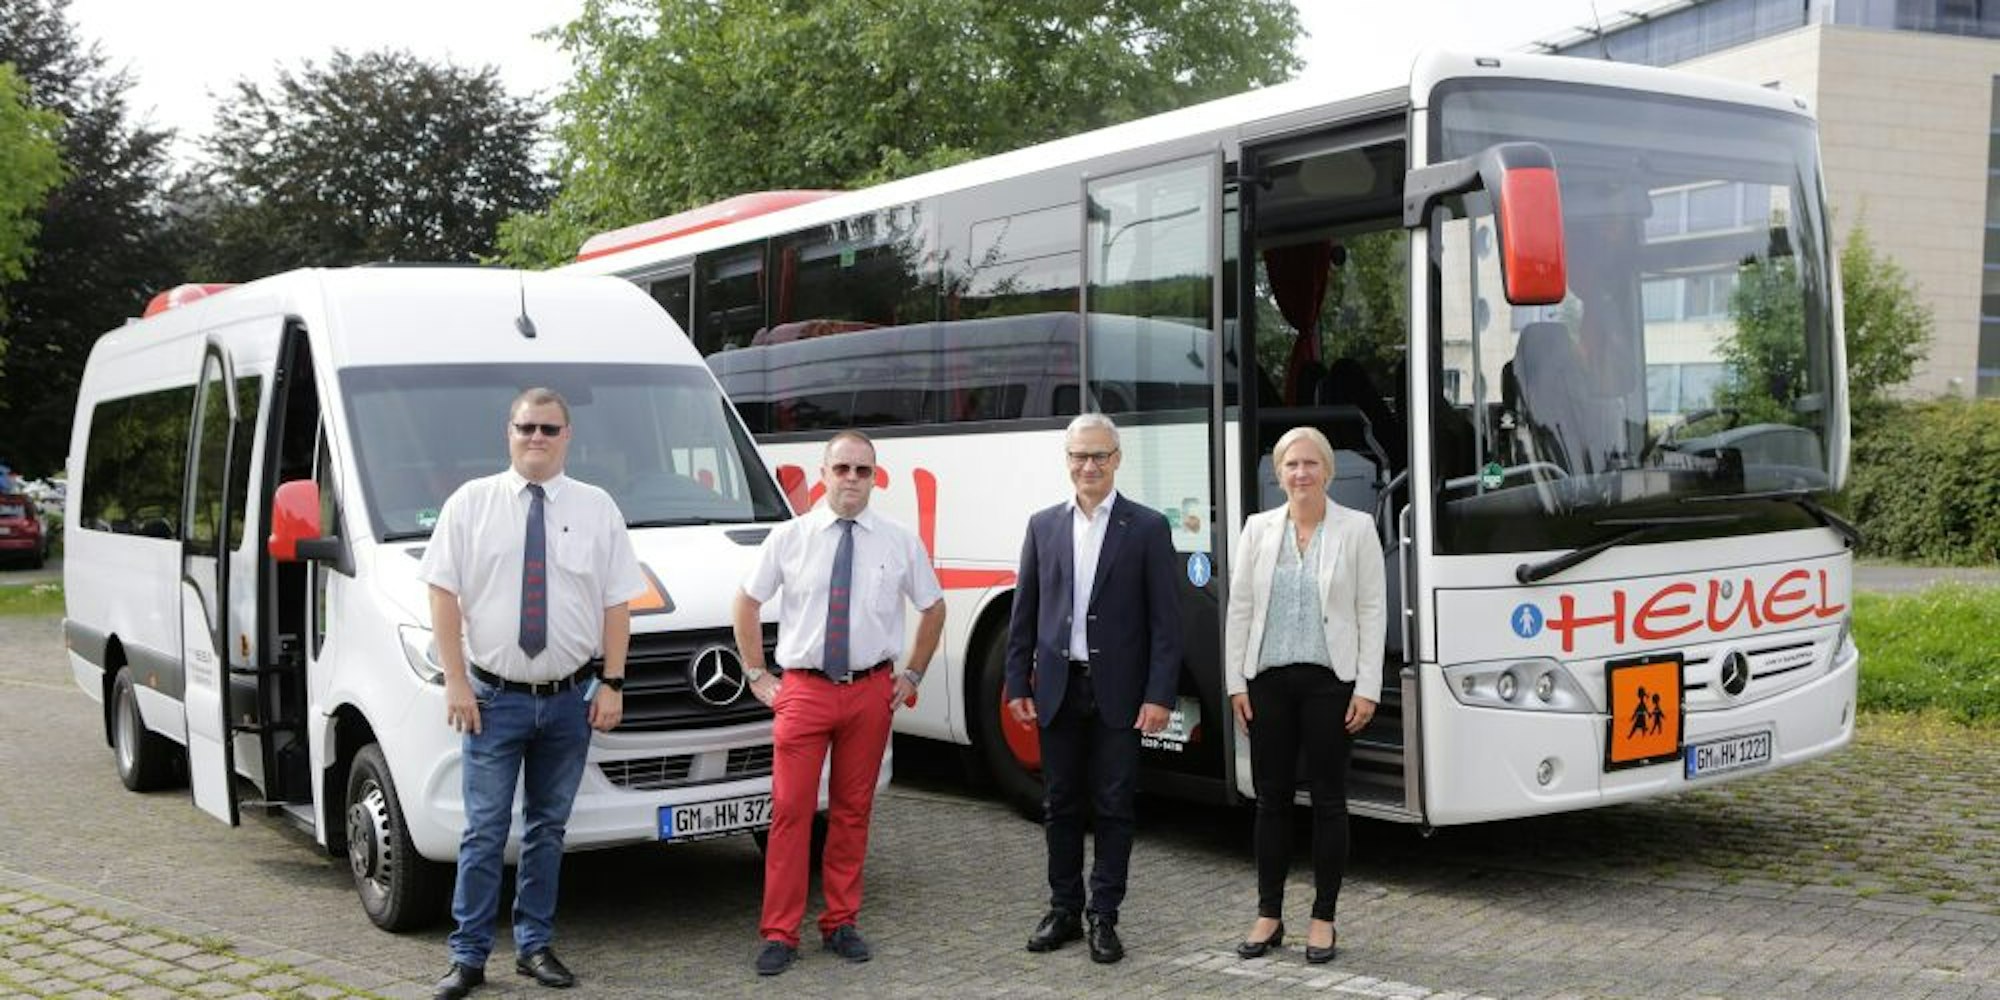 Die neuen Busse der Firma Heuel zur Schülerbeförderung stellten Marcel Temp, Björn Löbbert, Dr. Georg Ludwig und Diana Ottofüllung (v.l.) auf dem Parkplatz vor dem Lindlarer Rathaus vor.